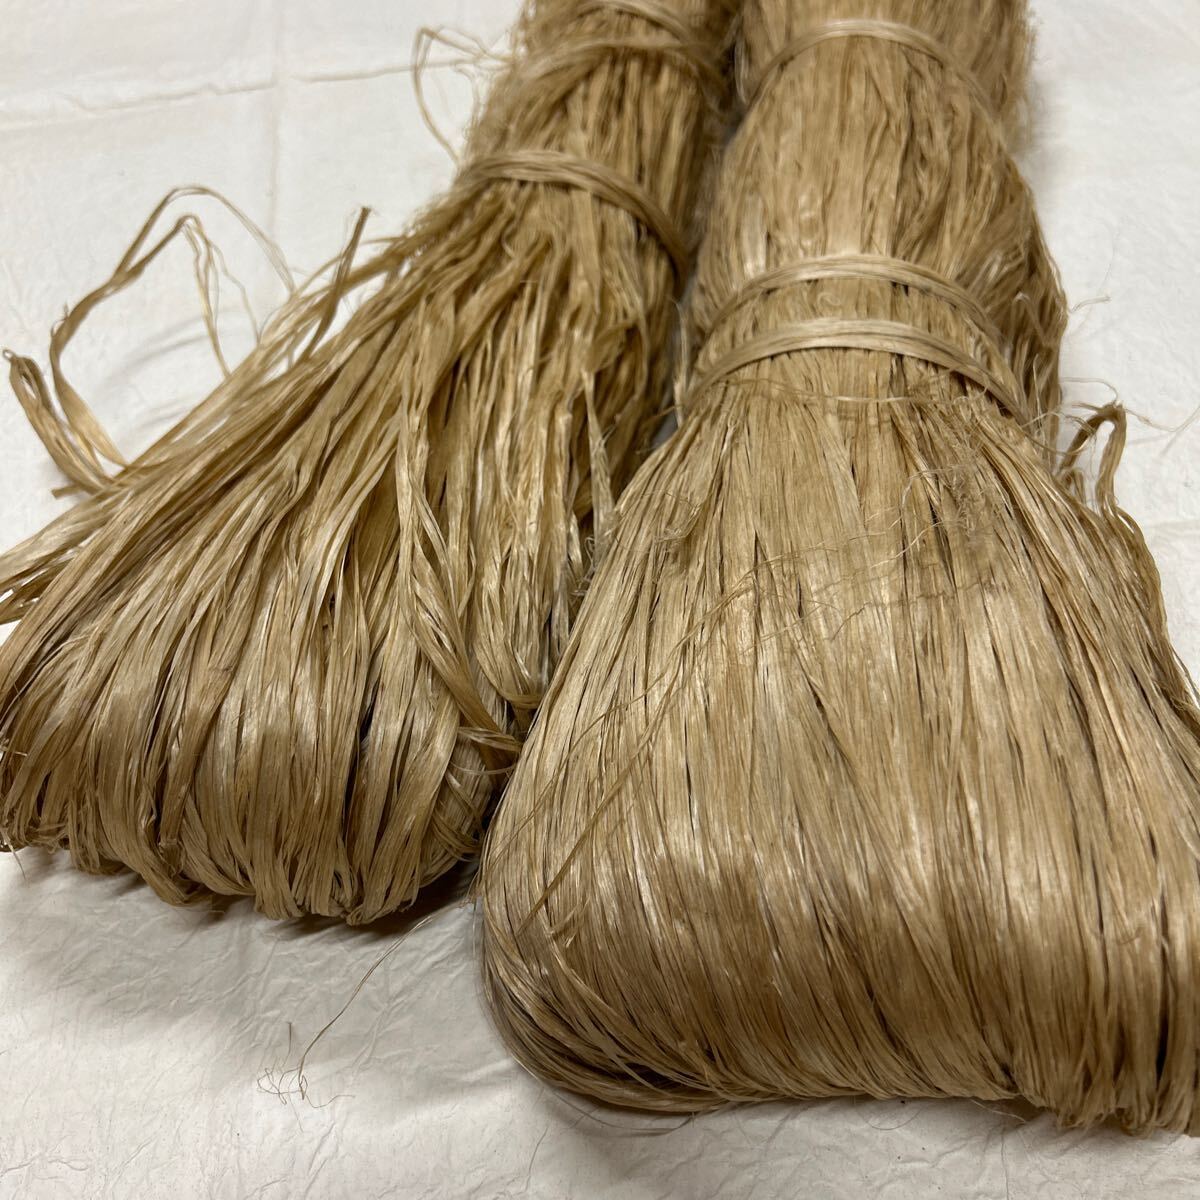  from .. Aizu Showa era .. flax . thread 1.6kg materials race culture 